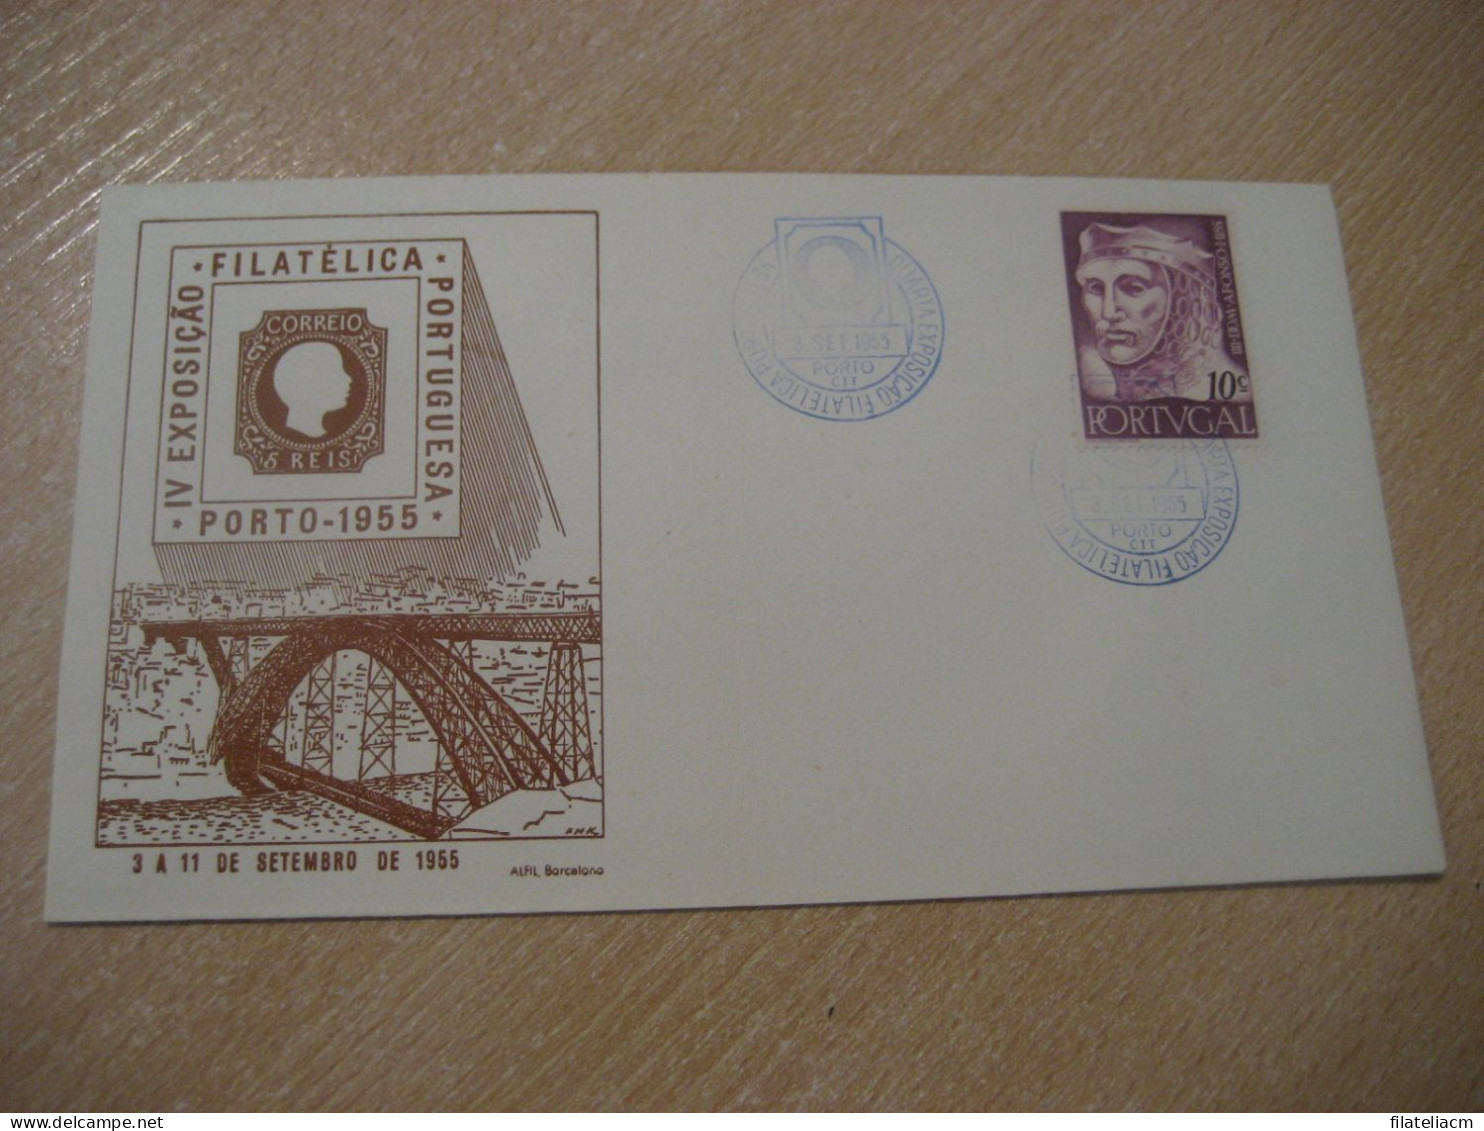 PORTO 1955 Expo Filatelica Stamp Bridge Cancel Cover PORTUGAL - Storia Postale